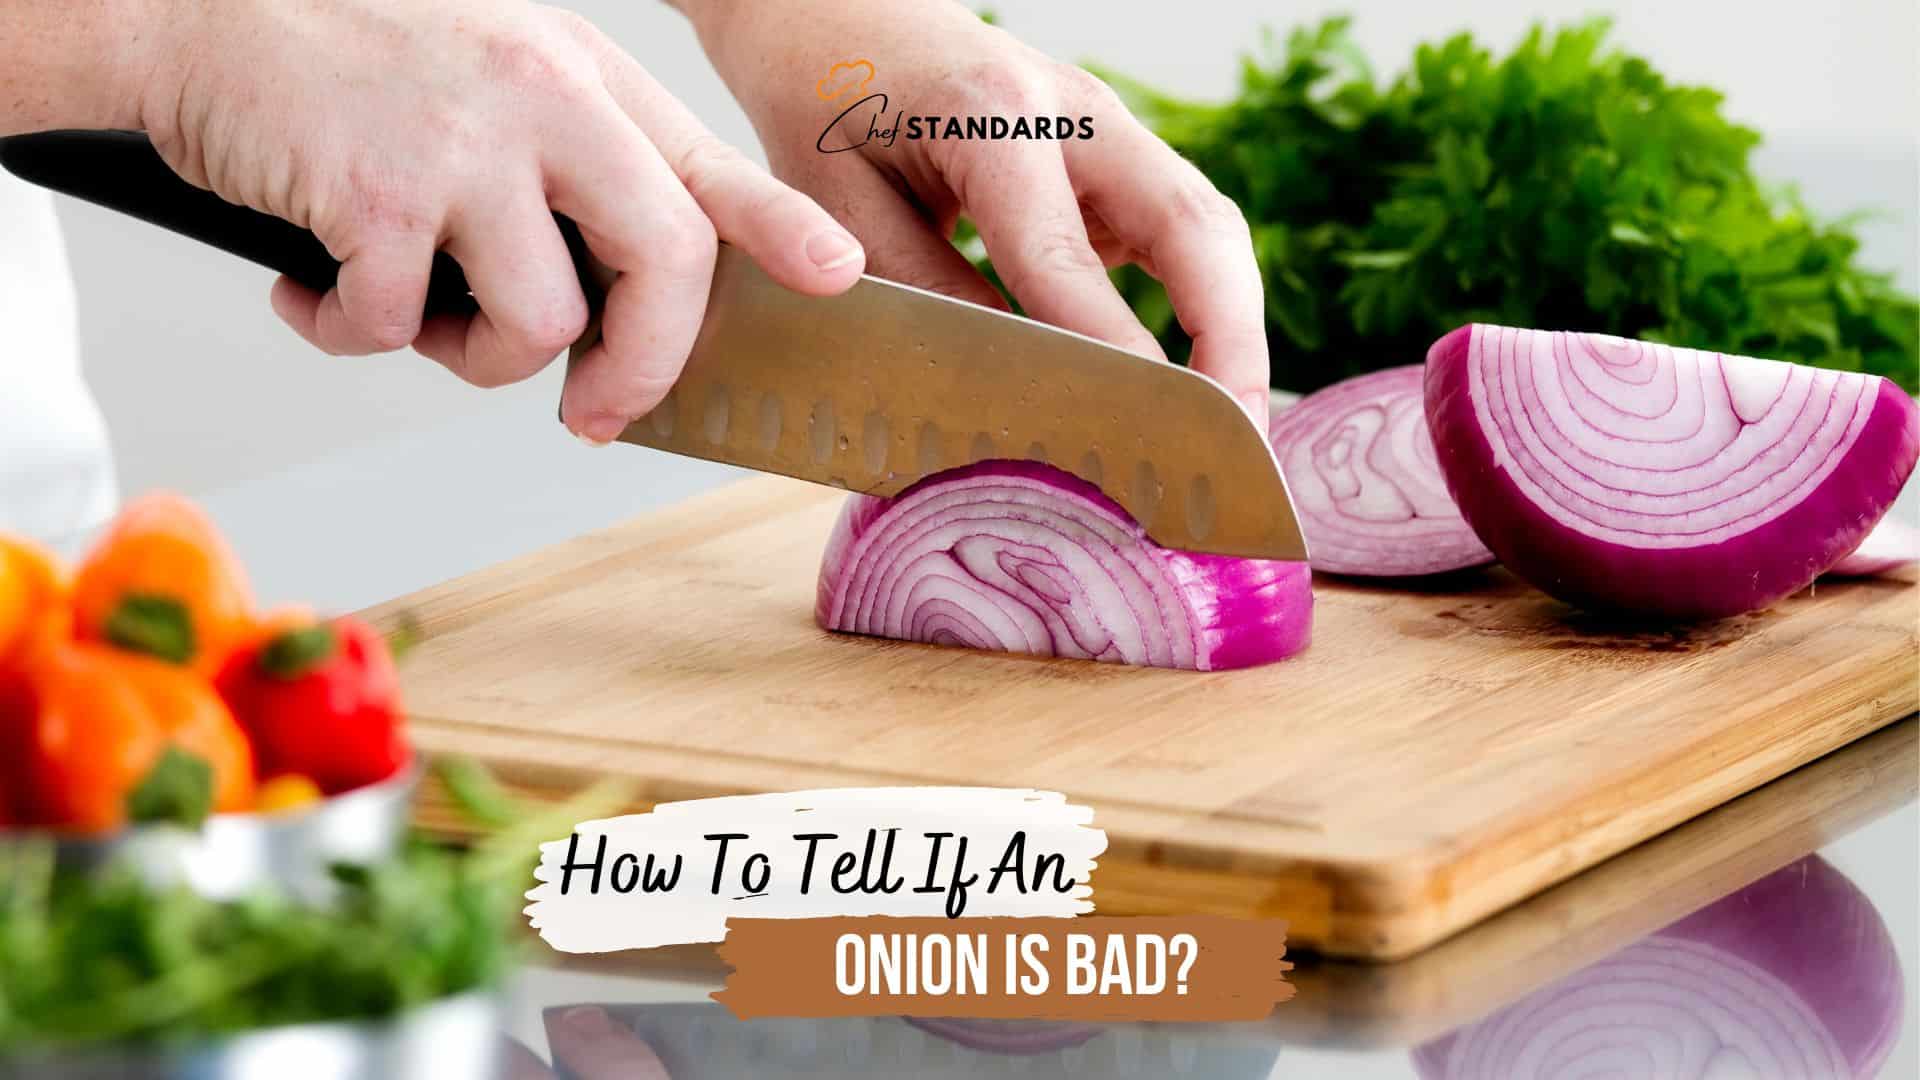 a woman cuts an onion